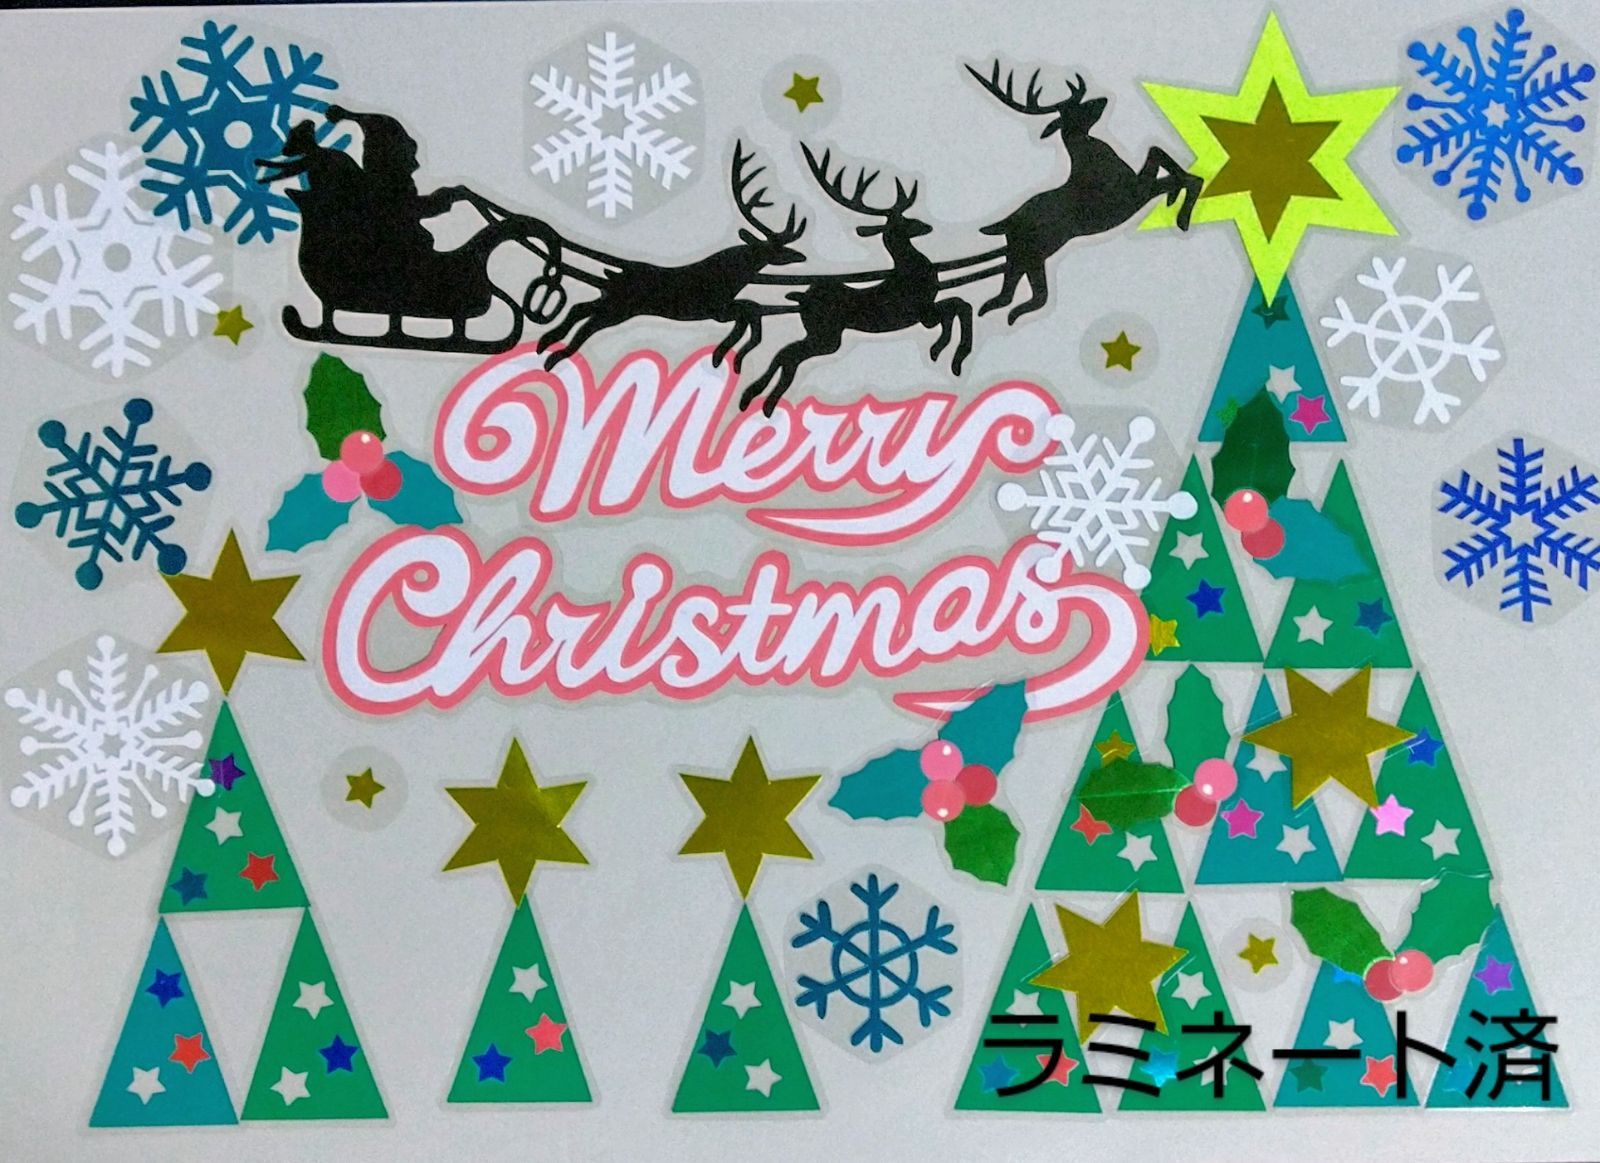 壁面飾り 12月 クリスマス クリスマスツリー サンタクロース 柊 トナカイ Sale 61 Off